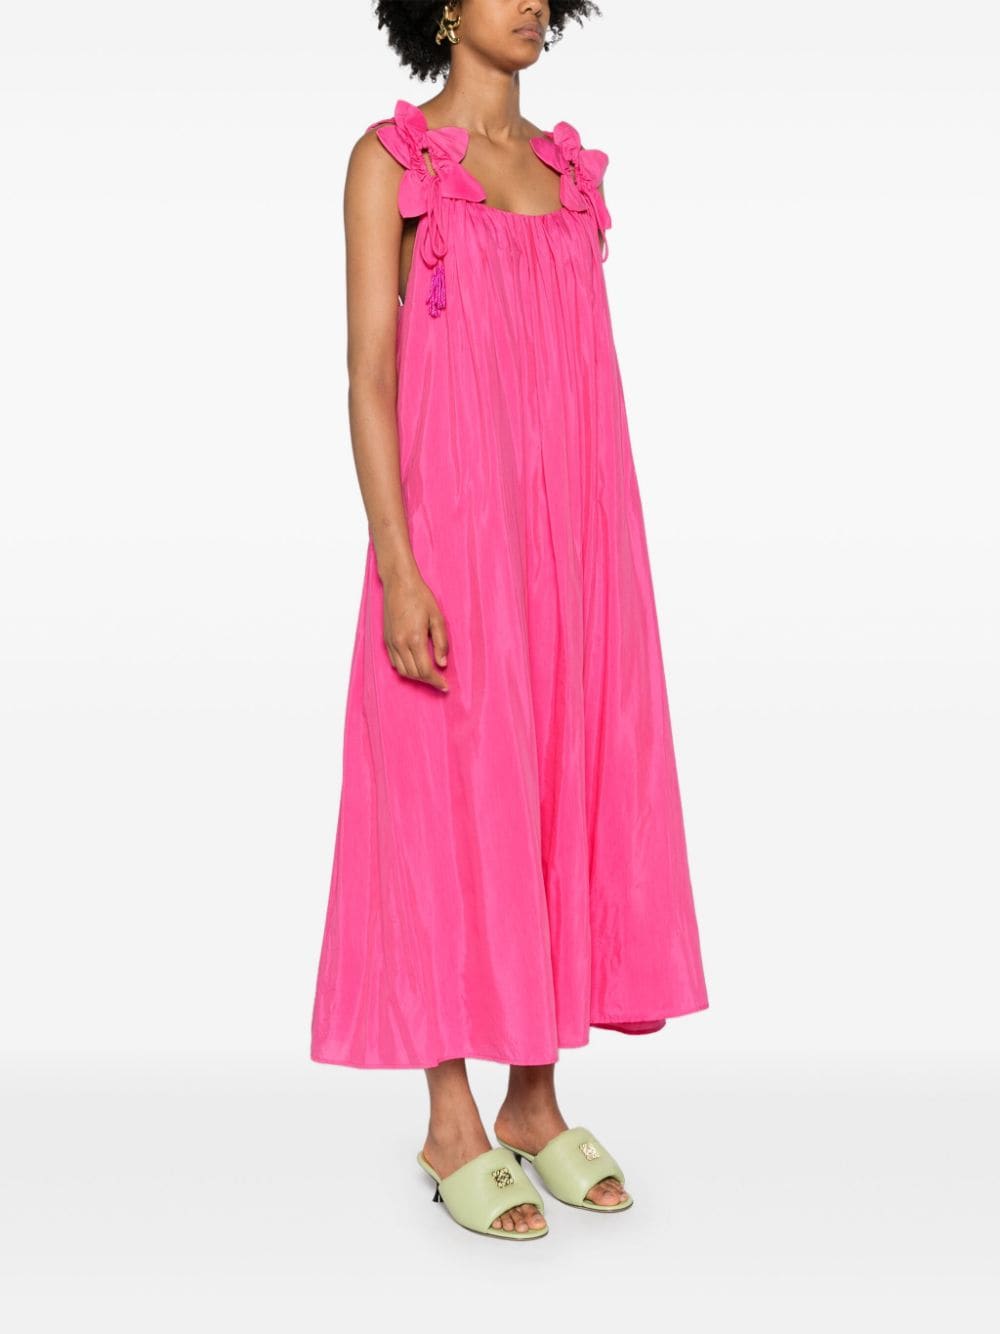 FARM Rio Mouwloze jurk Roze